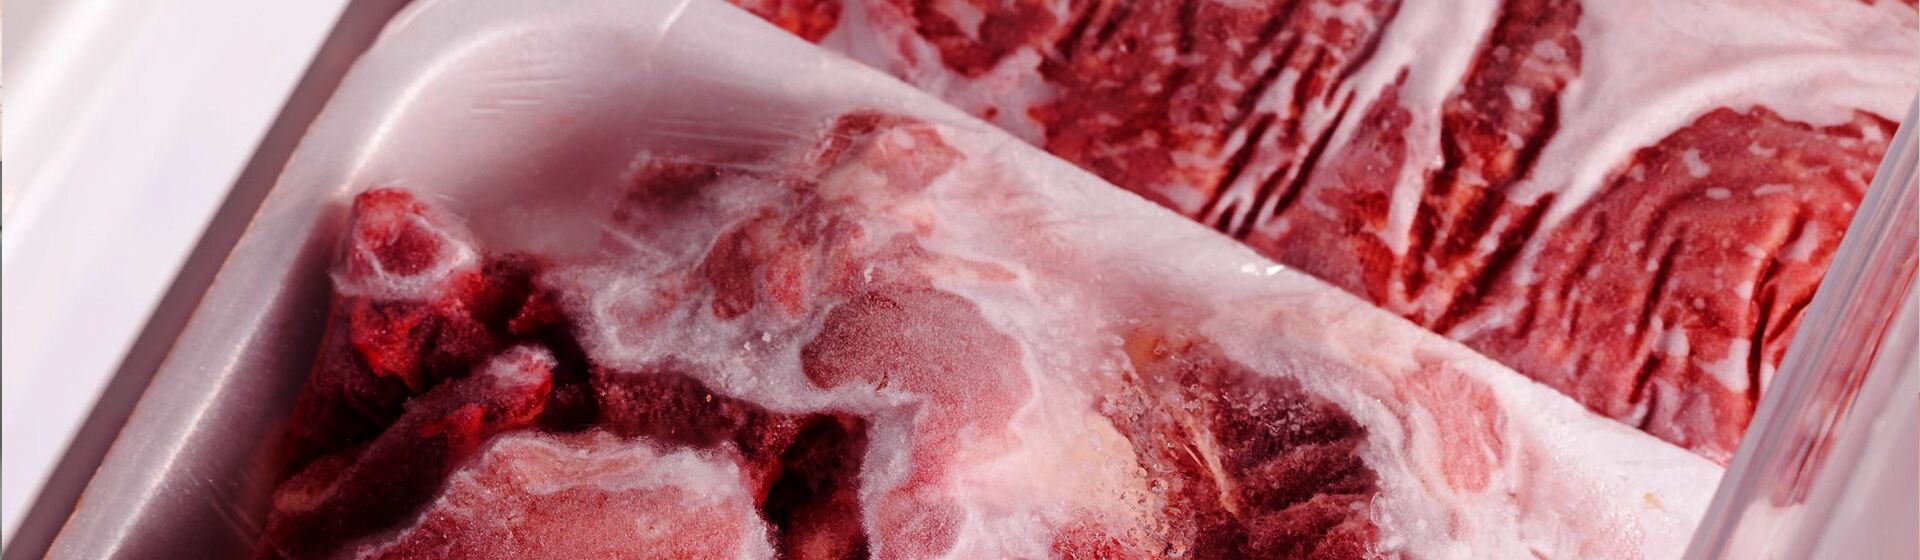 Хранение мяса в морозильной камере